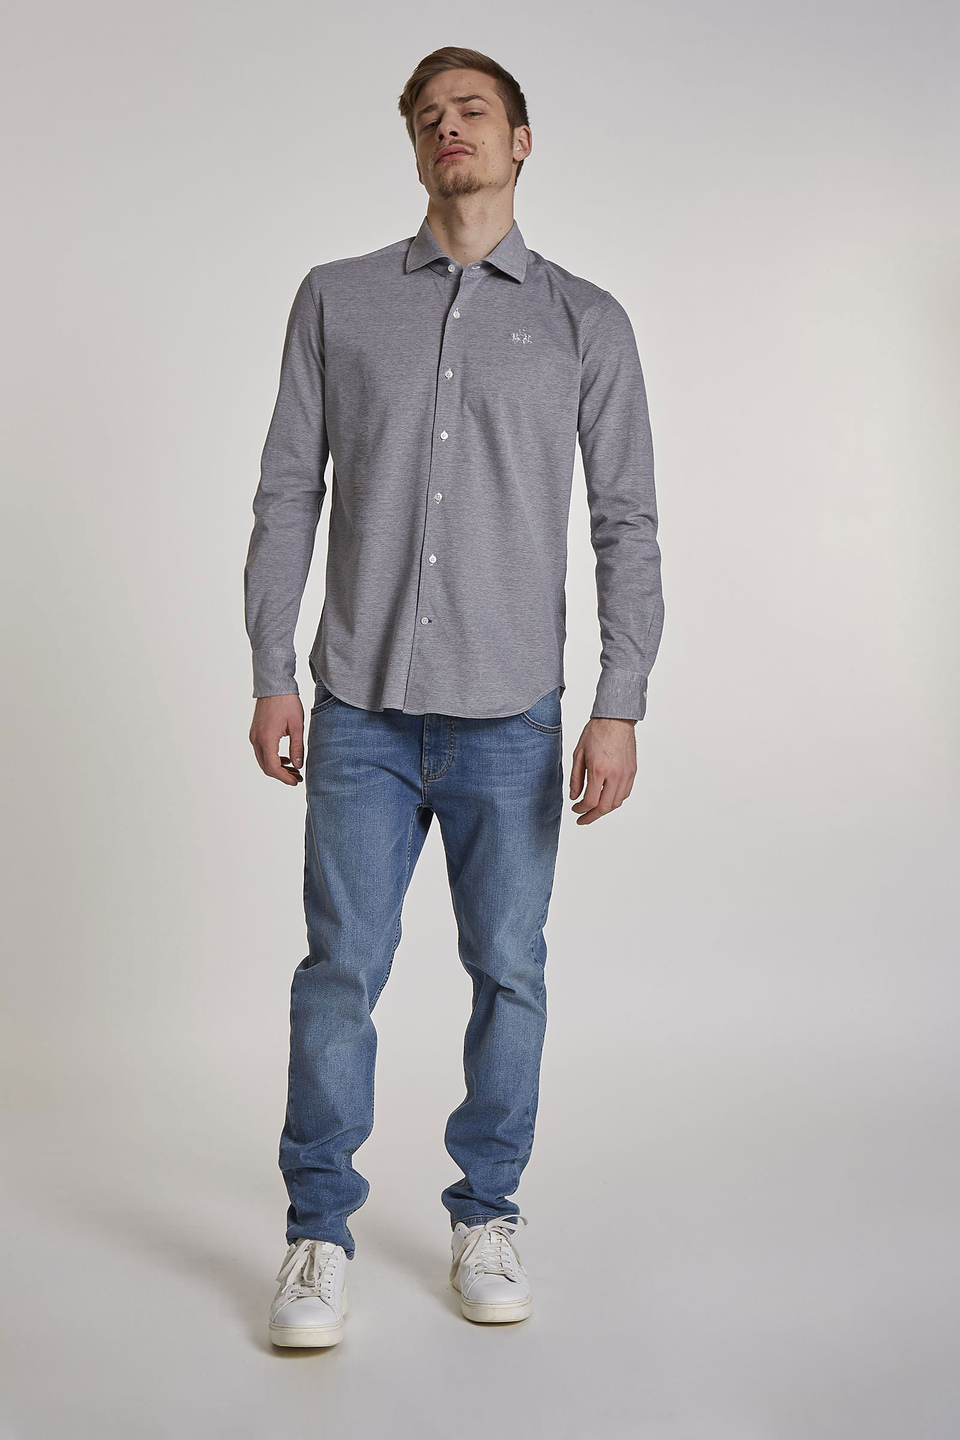 Herrenhemd aus Baumwolle mit langen Ärmeln im Regular Fit - La Martina - Official Online Shop